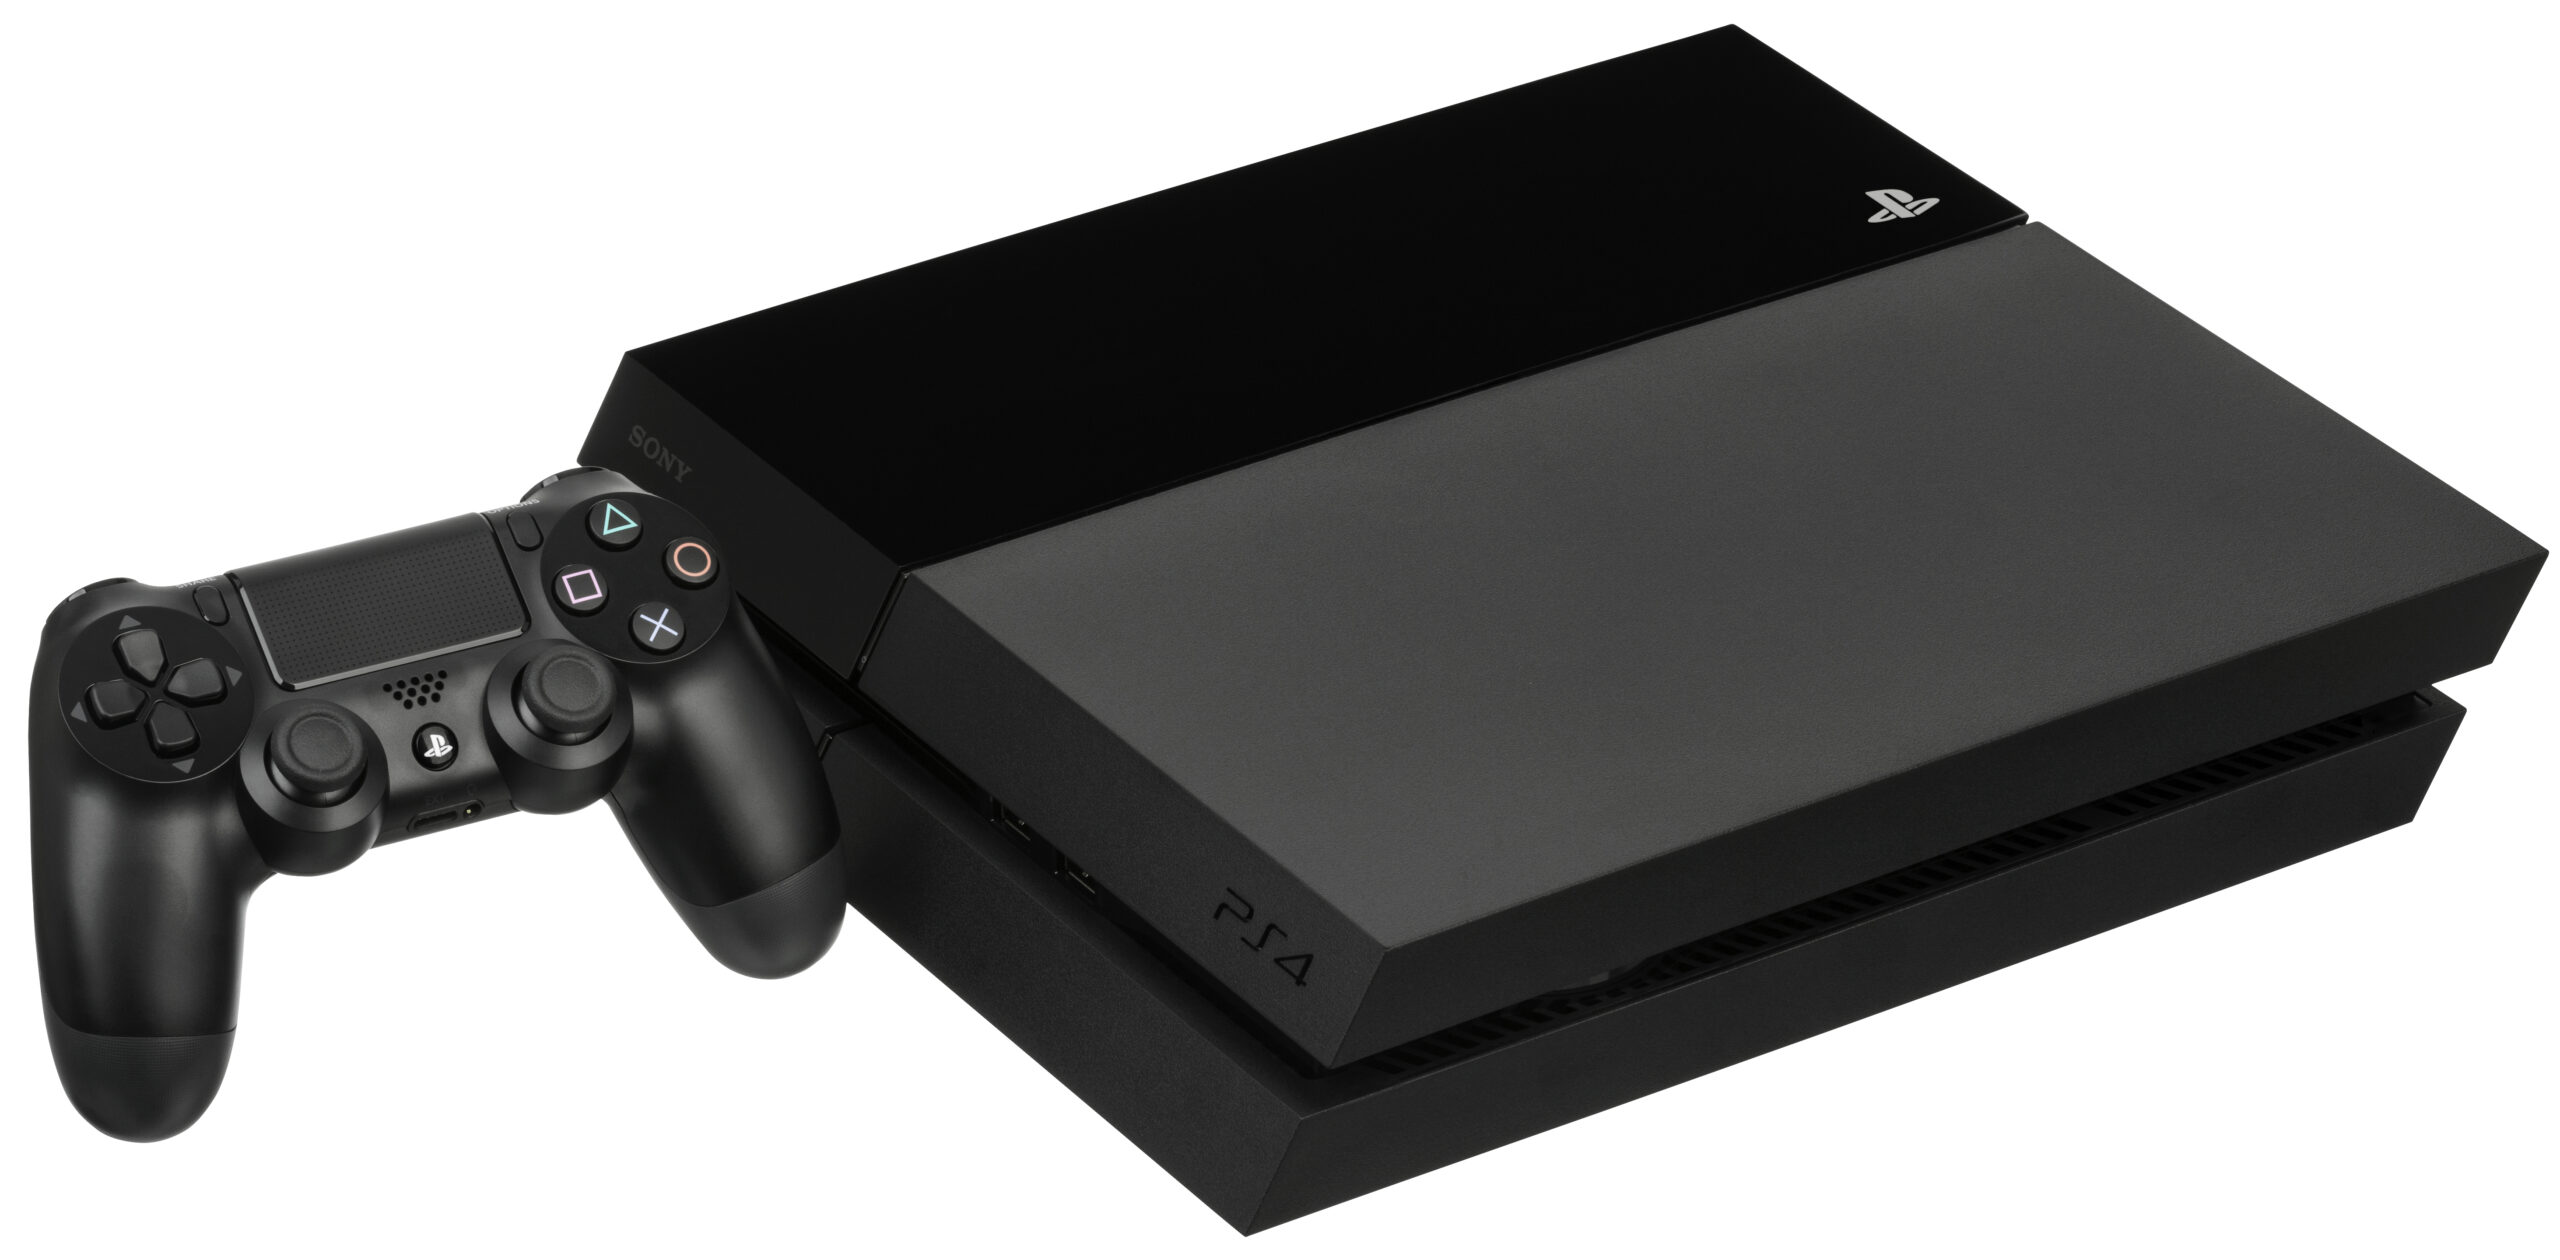 PlayStation 4 surpasses 108.9 million consoles sold